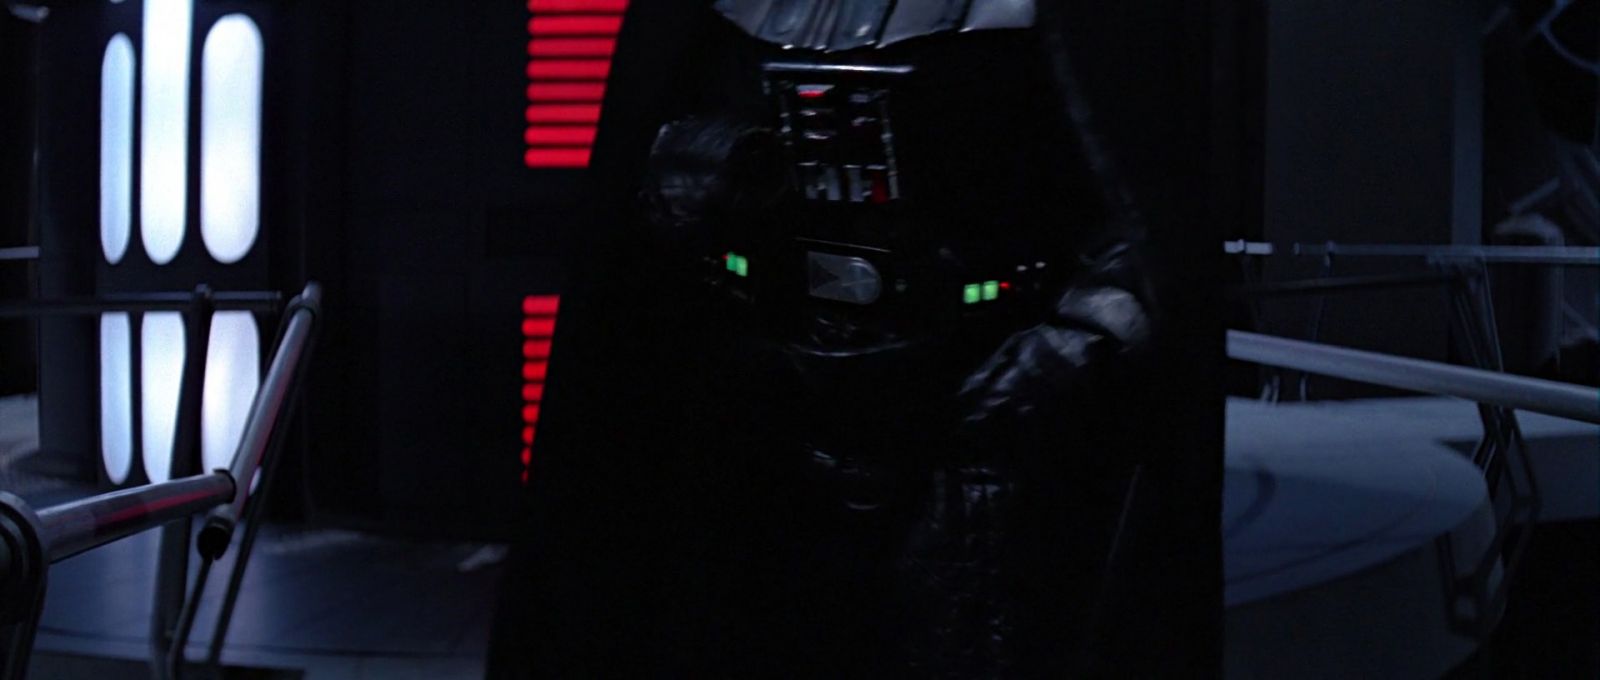 ROTJ-Vader-13614.jpg